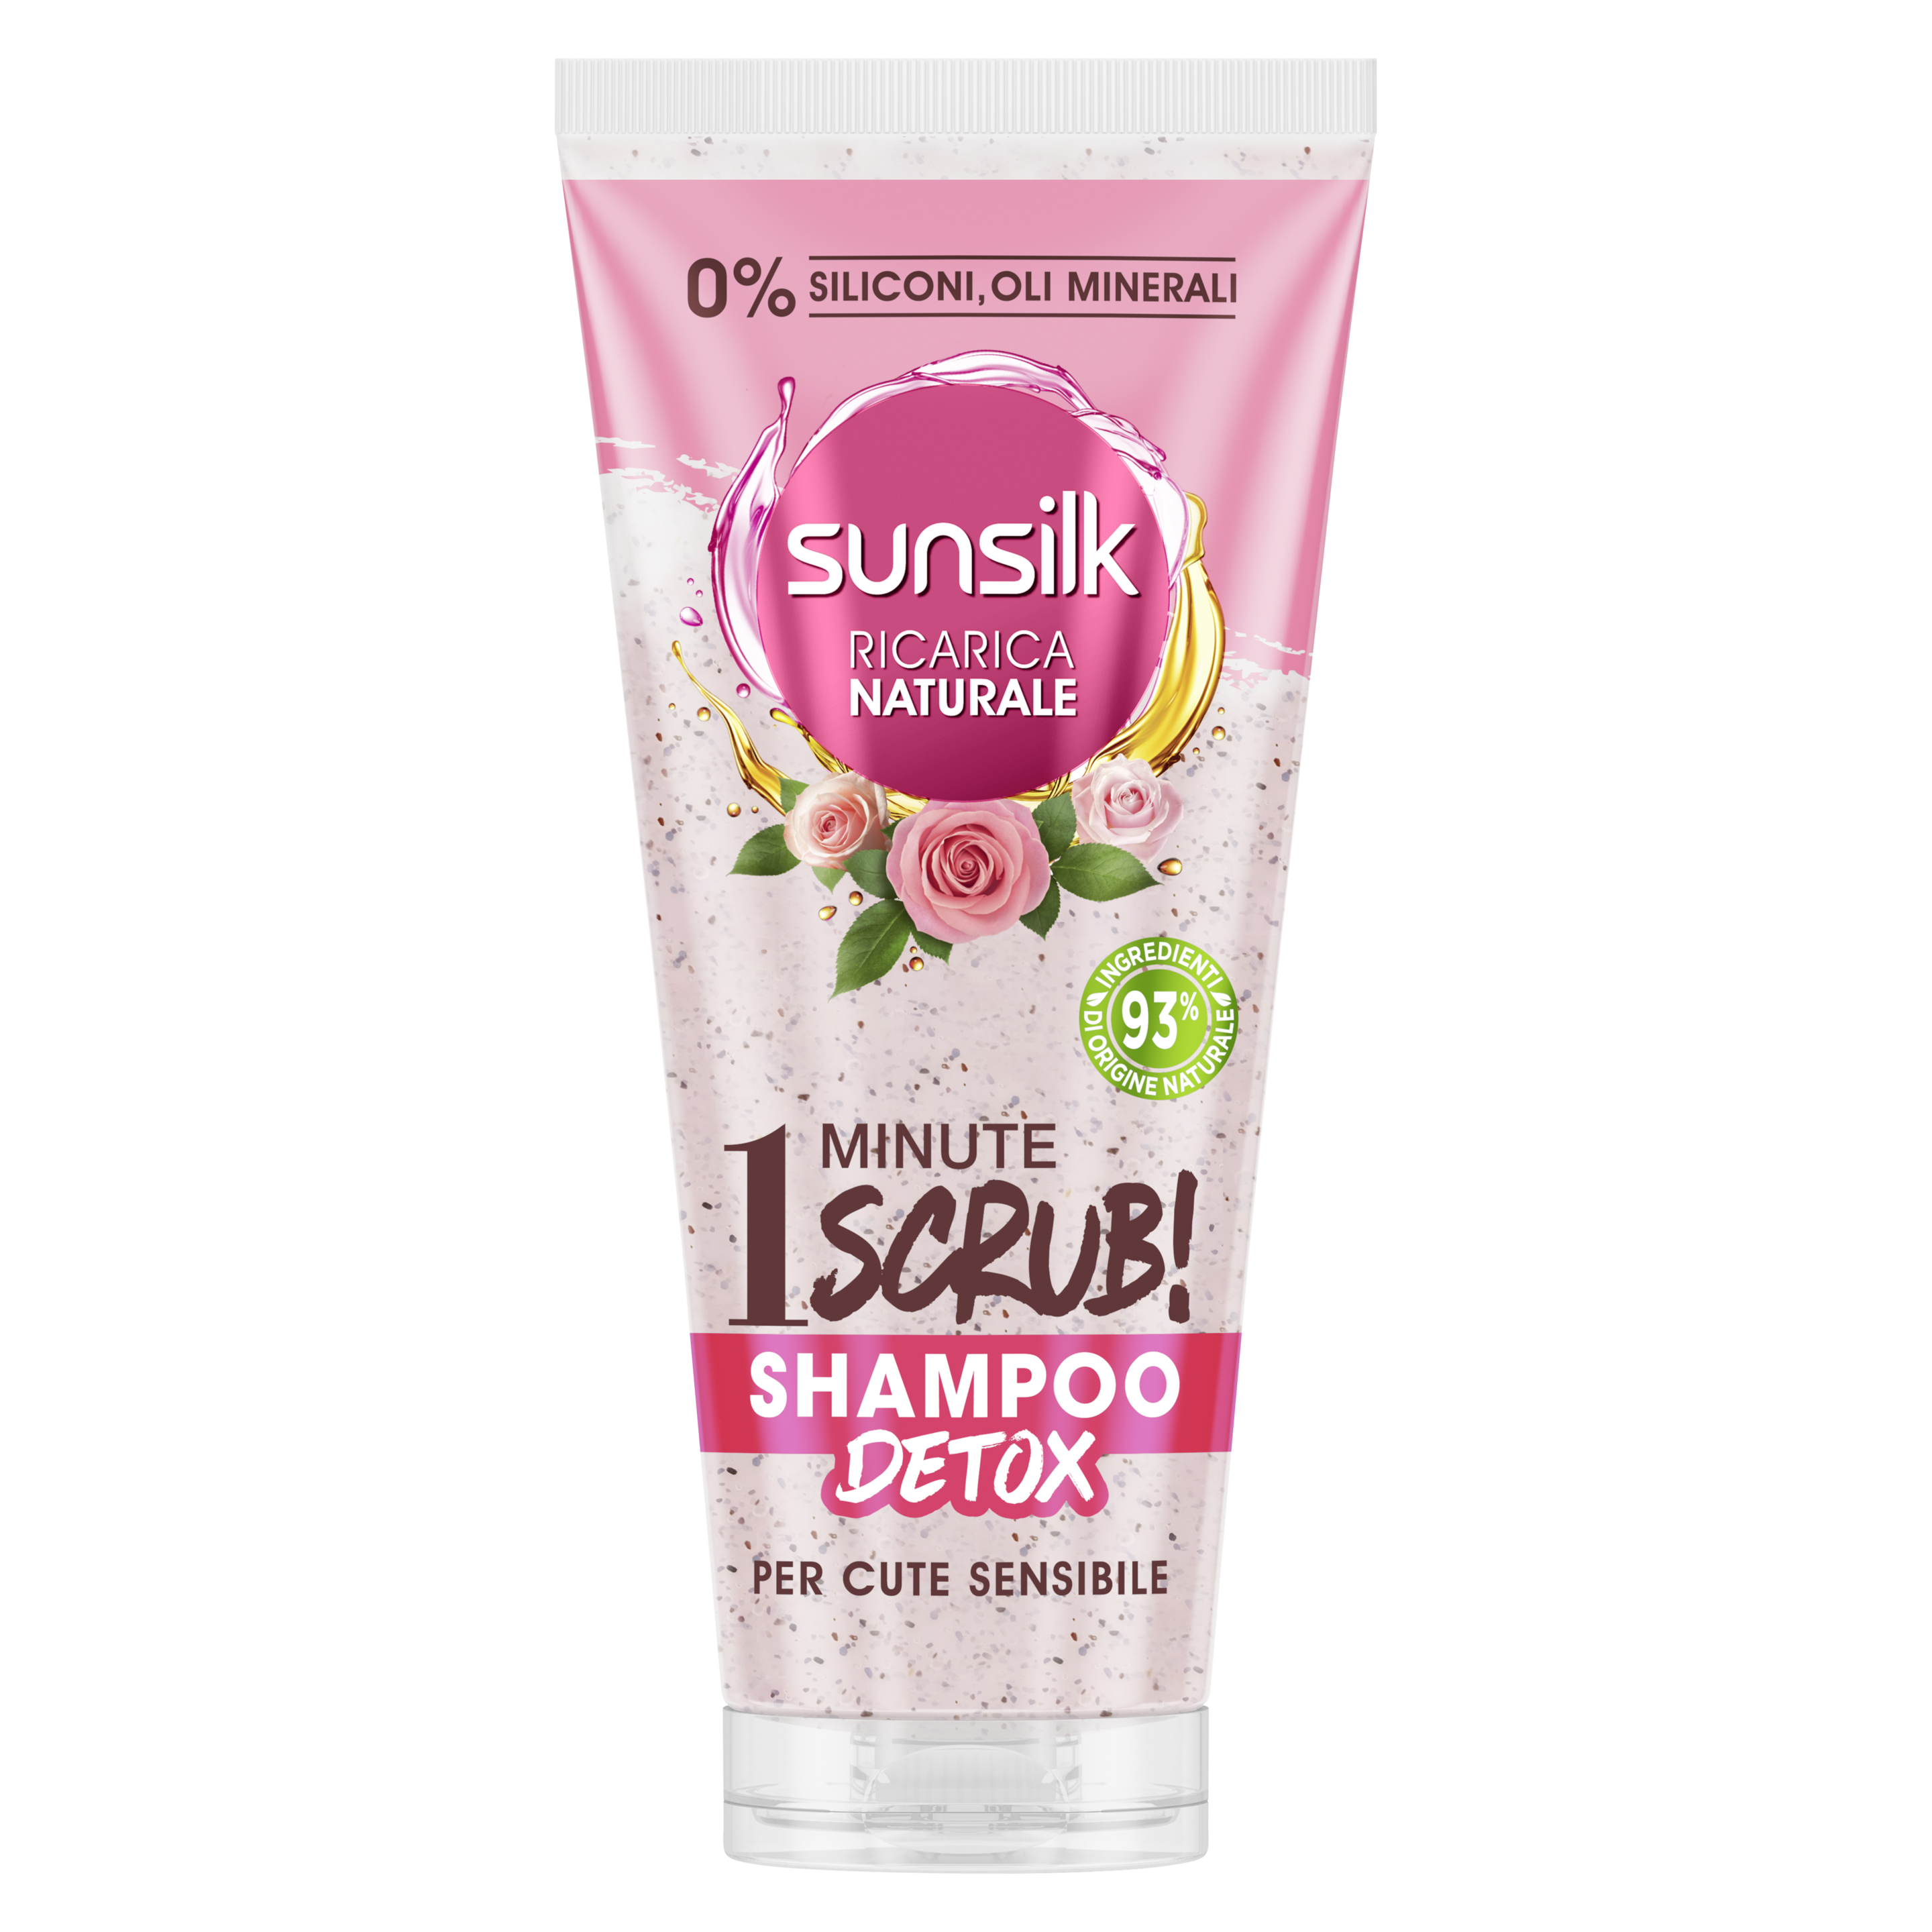 Sunsilk Ricarica Naturale Shampoo Scrub Per Cute Sensibile 200ml